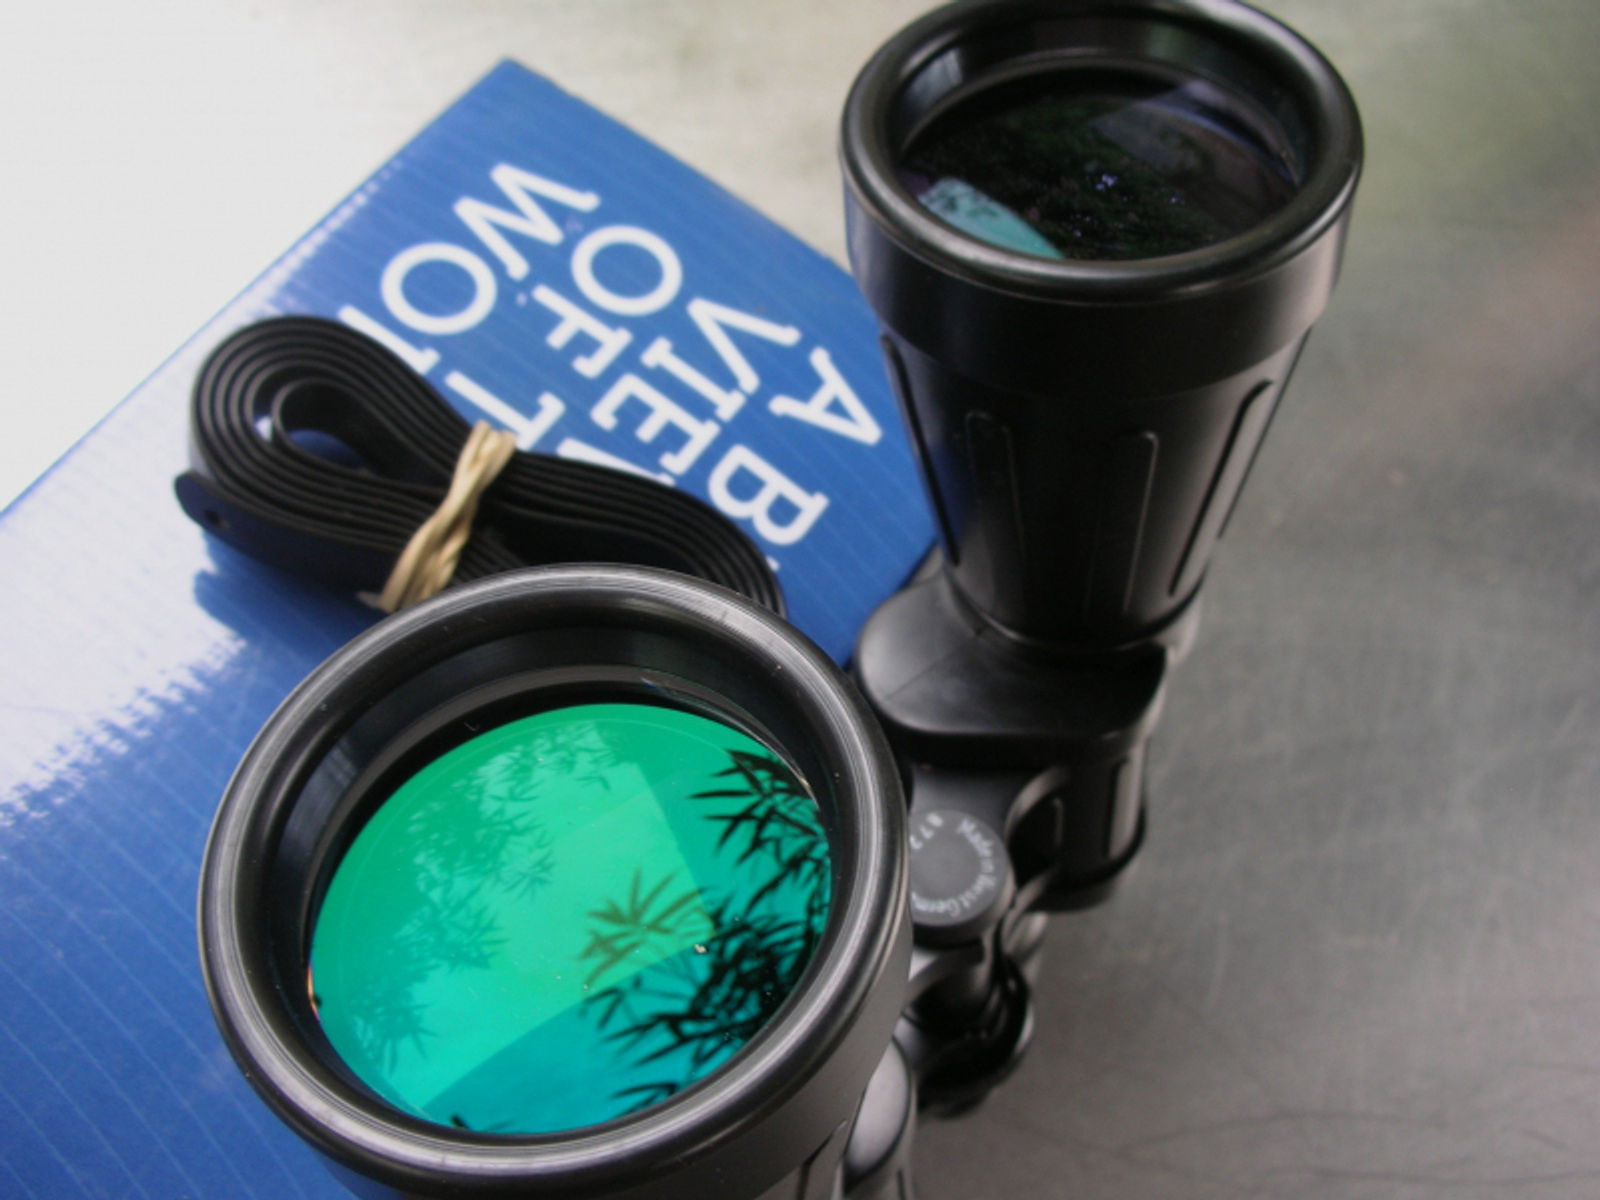 Fernglas Optolyth Alpin 10x50 neuwertig unbenutzt